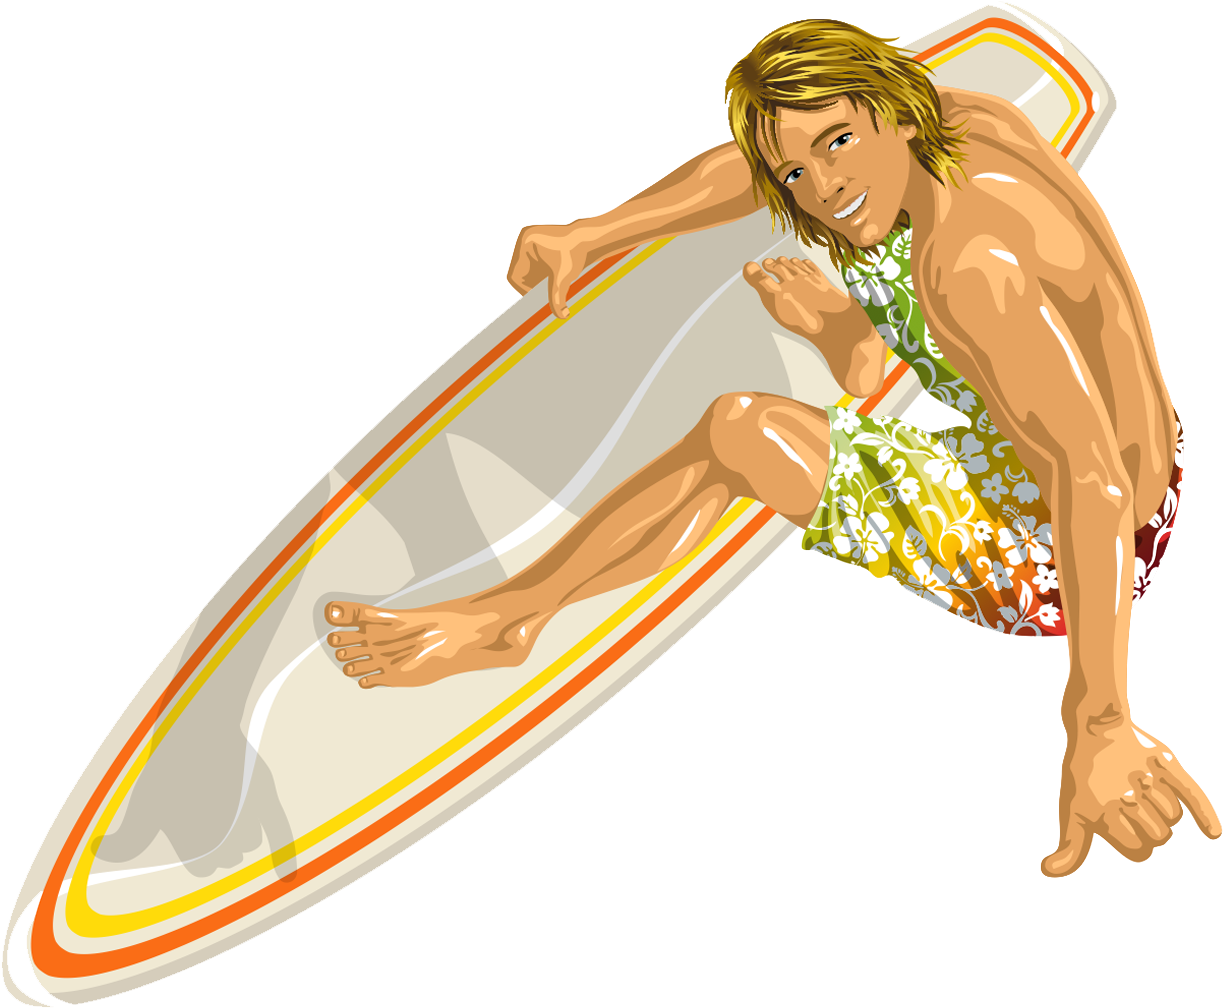 Le surf